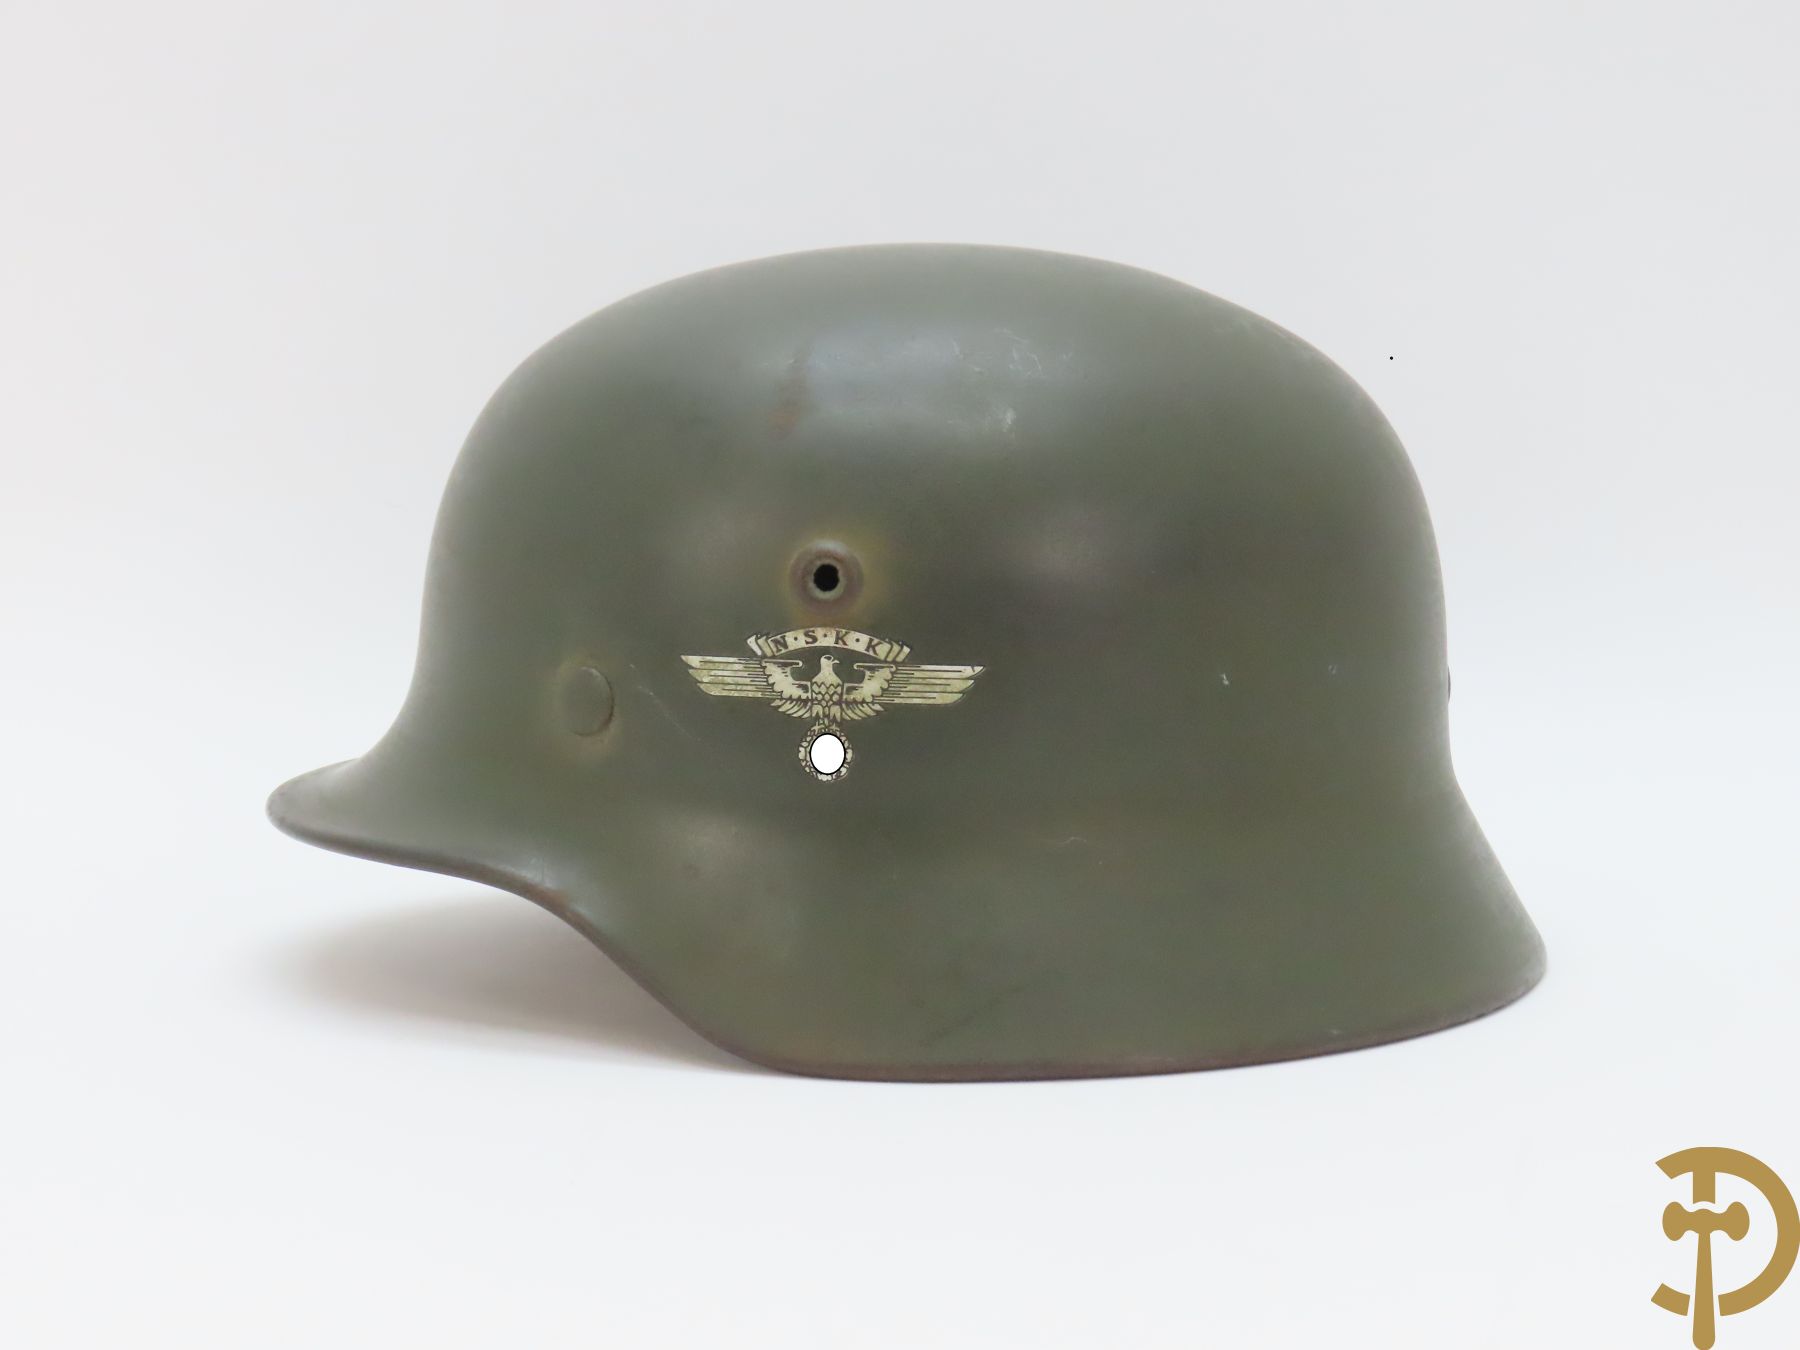 Duitse helm NSKK gemerkt, DN 260 gestanst binnenin (zonder echtheidsgarantie - waarschijnlijk recenter binnenwerk)